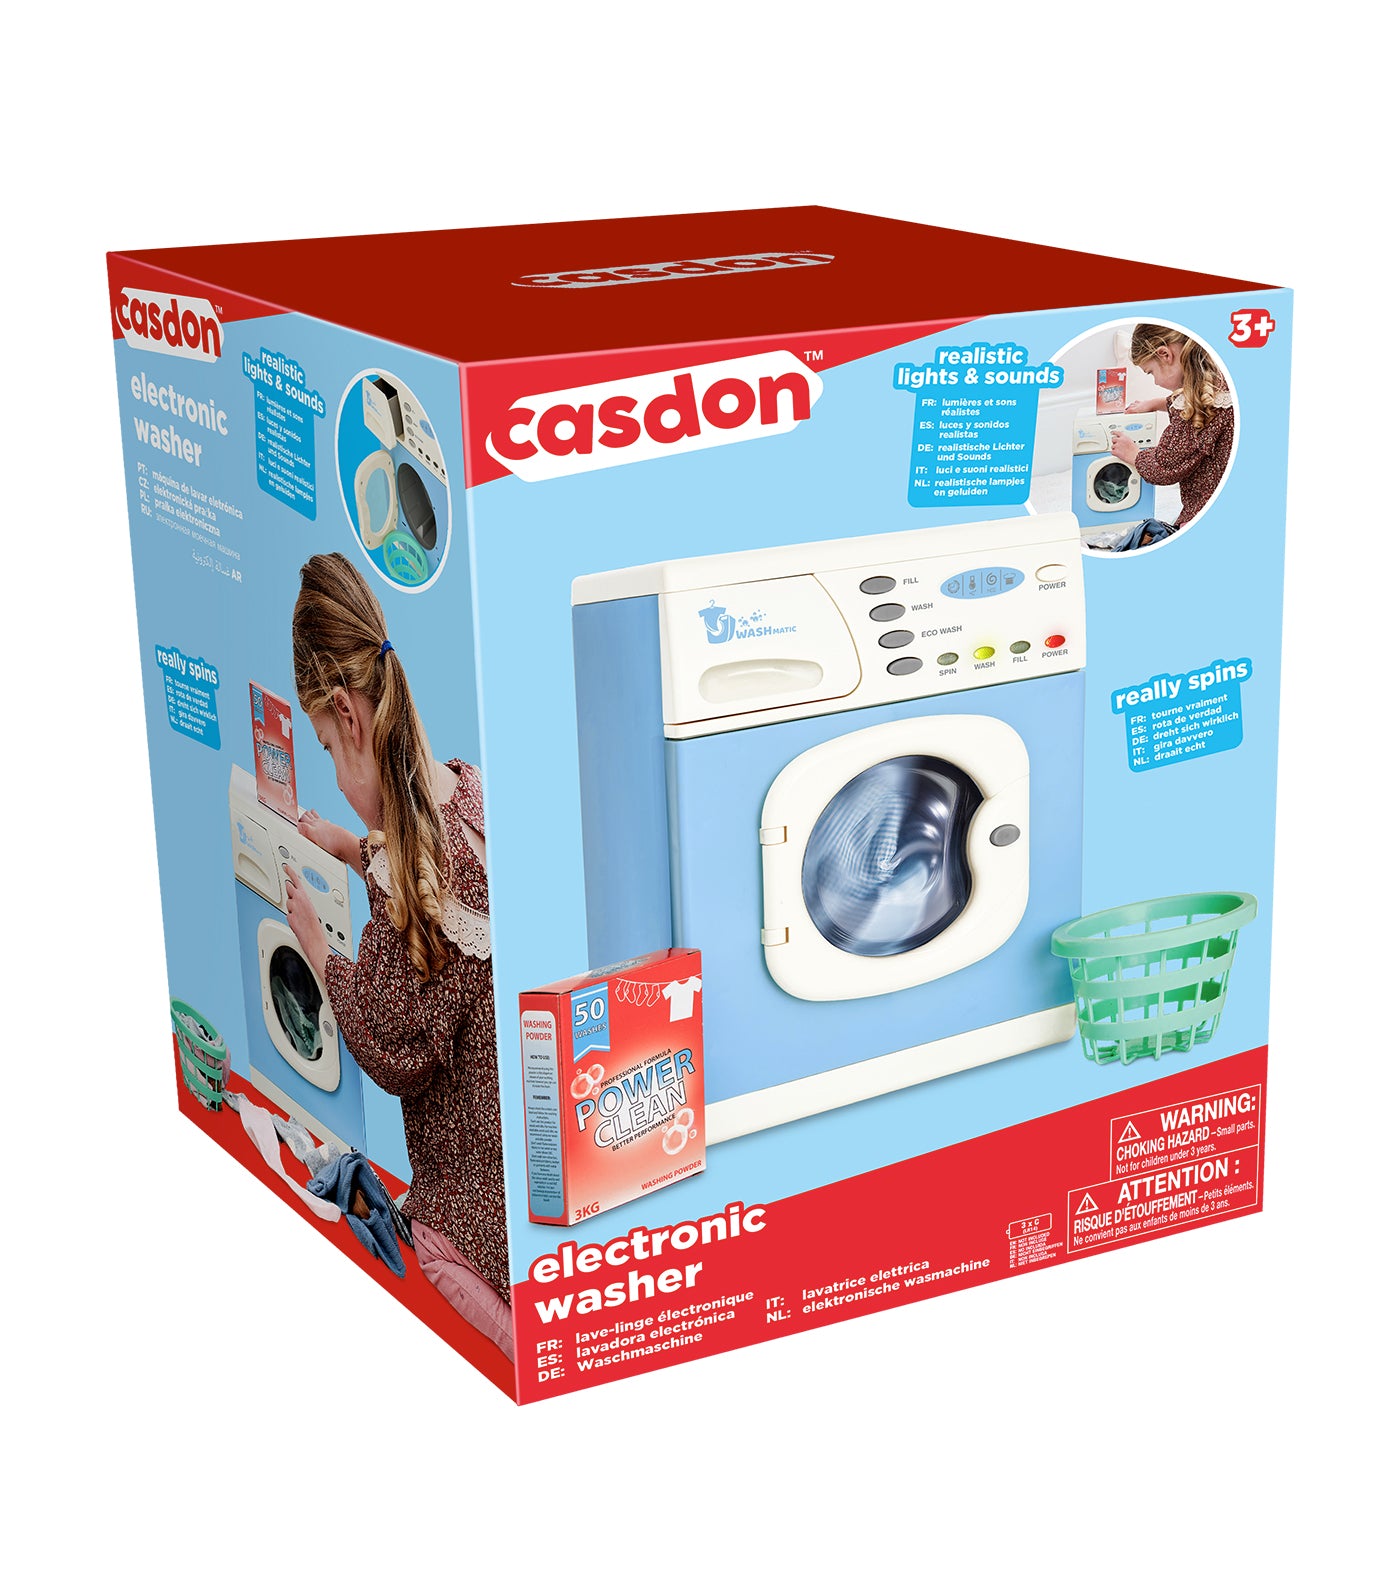 Casdon Electronic Washer Playset